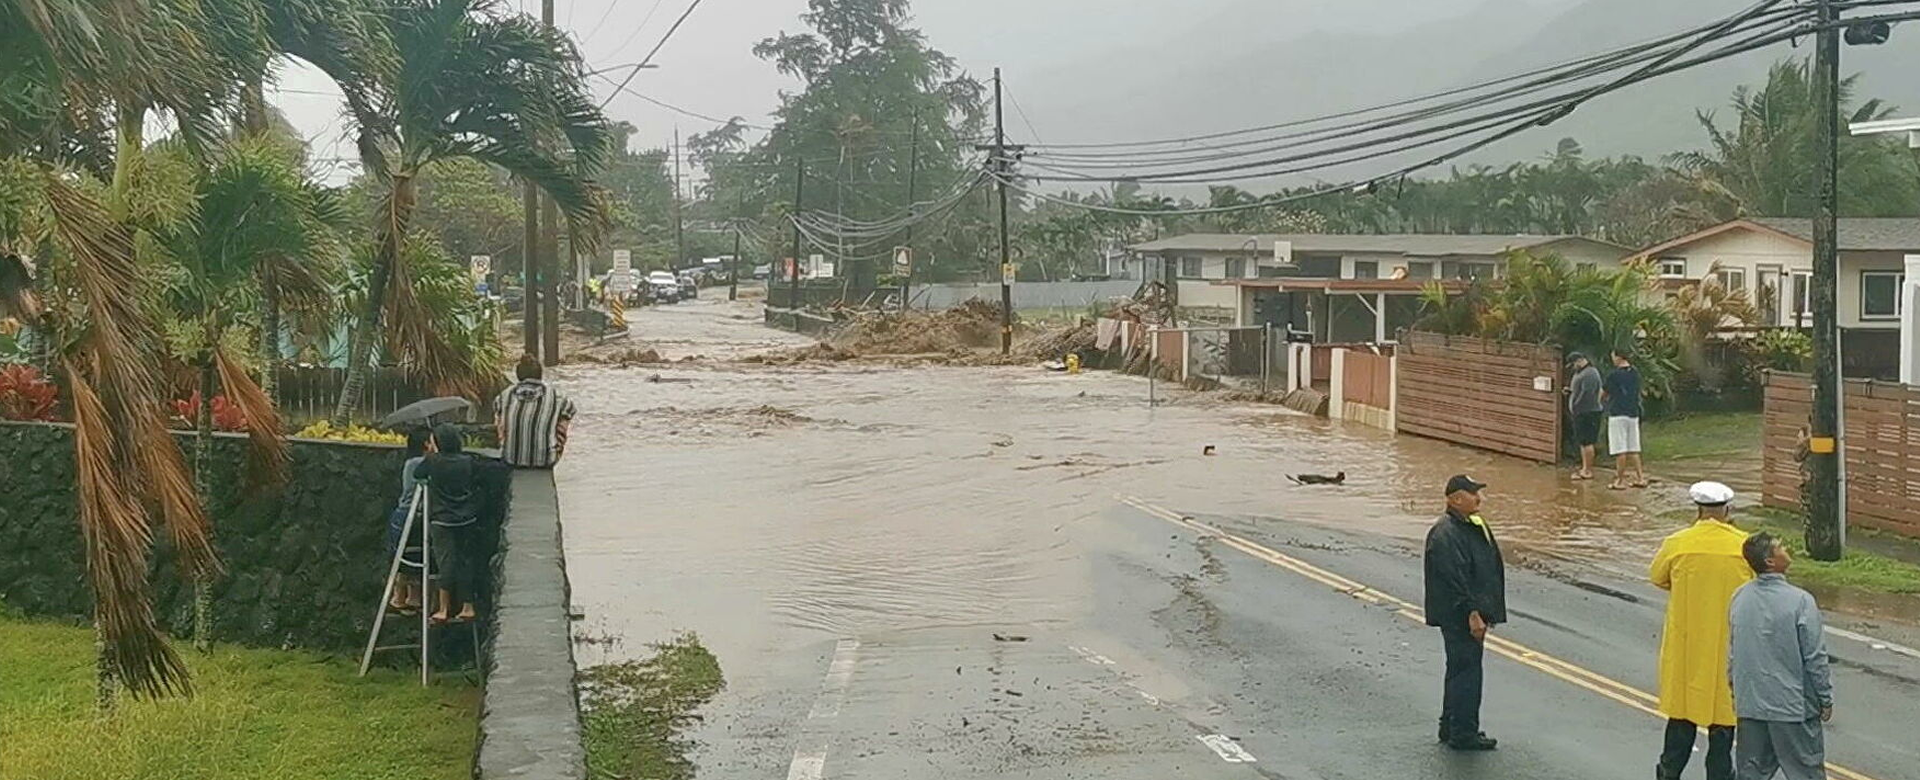 Hawái en emergencia por daños provocados por inundaciones